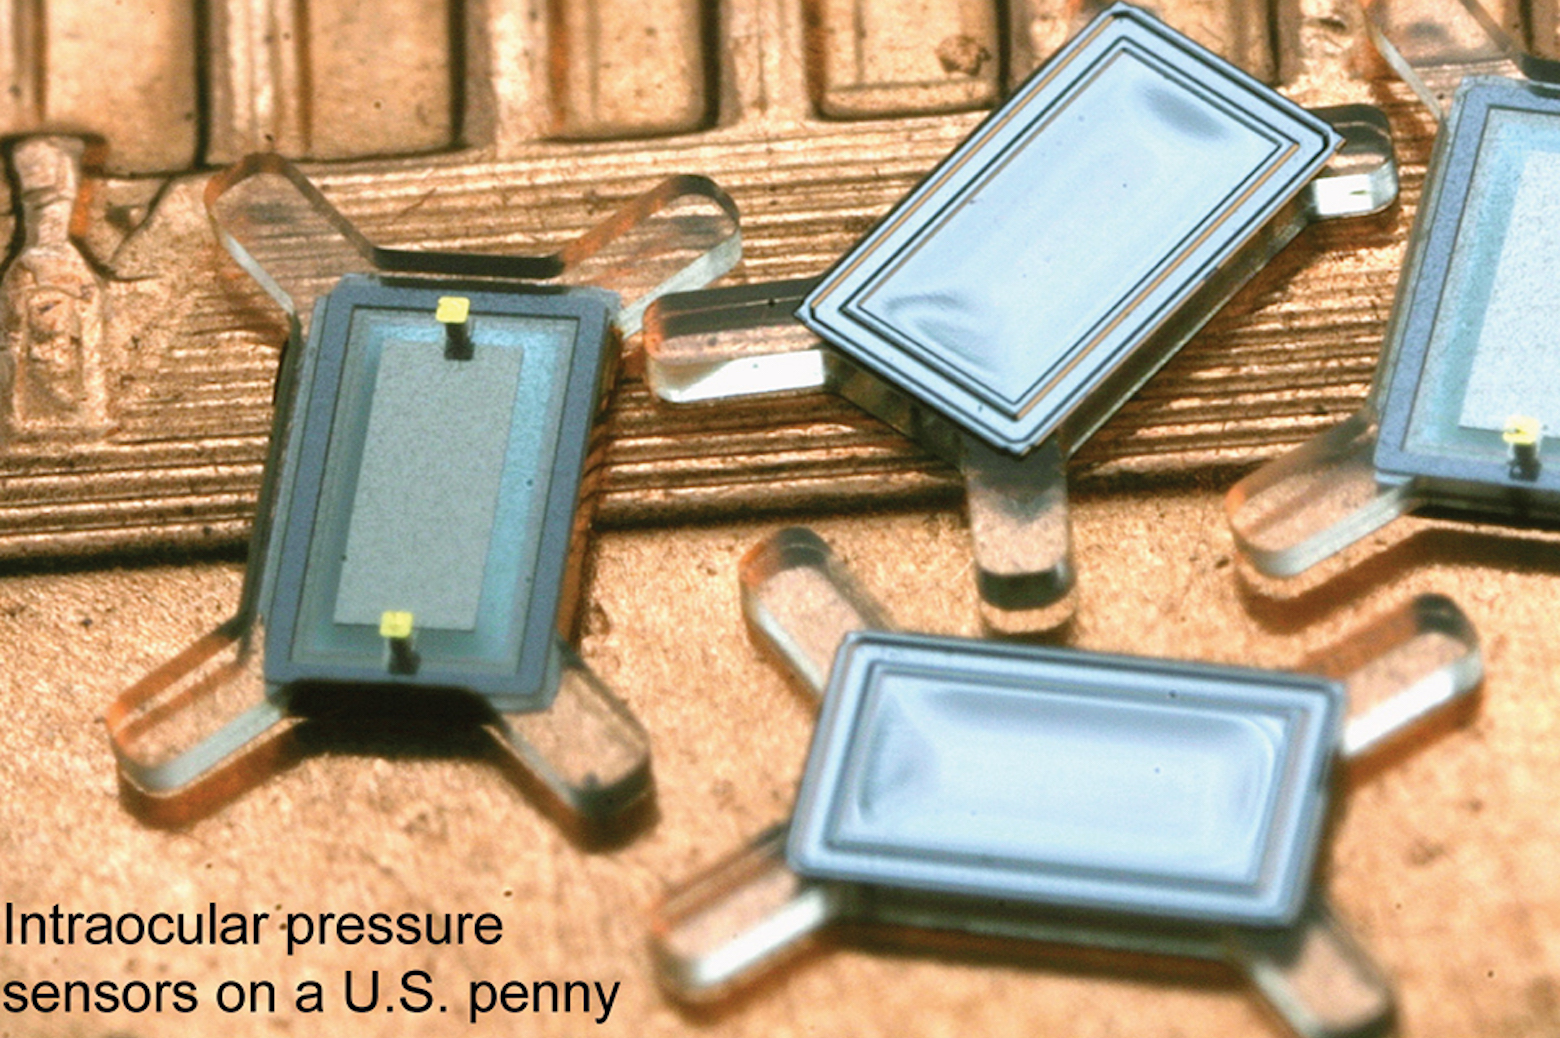 intraocular pressure sensors on a U.S. penny